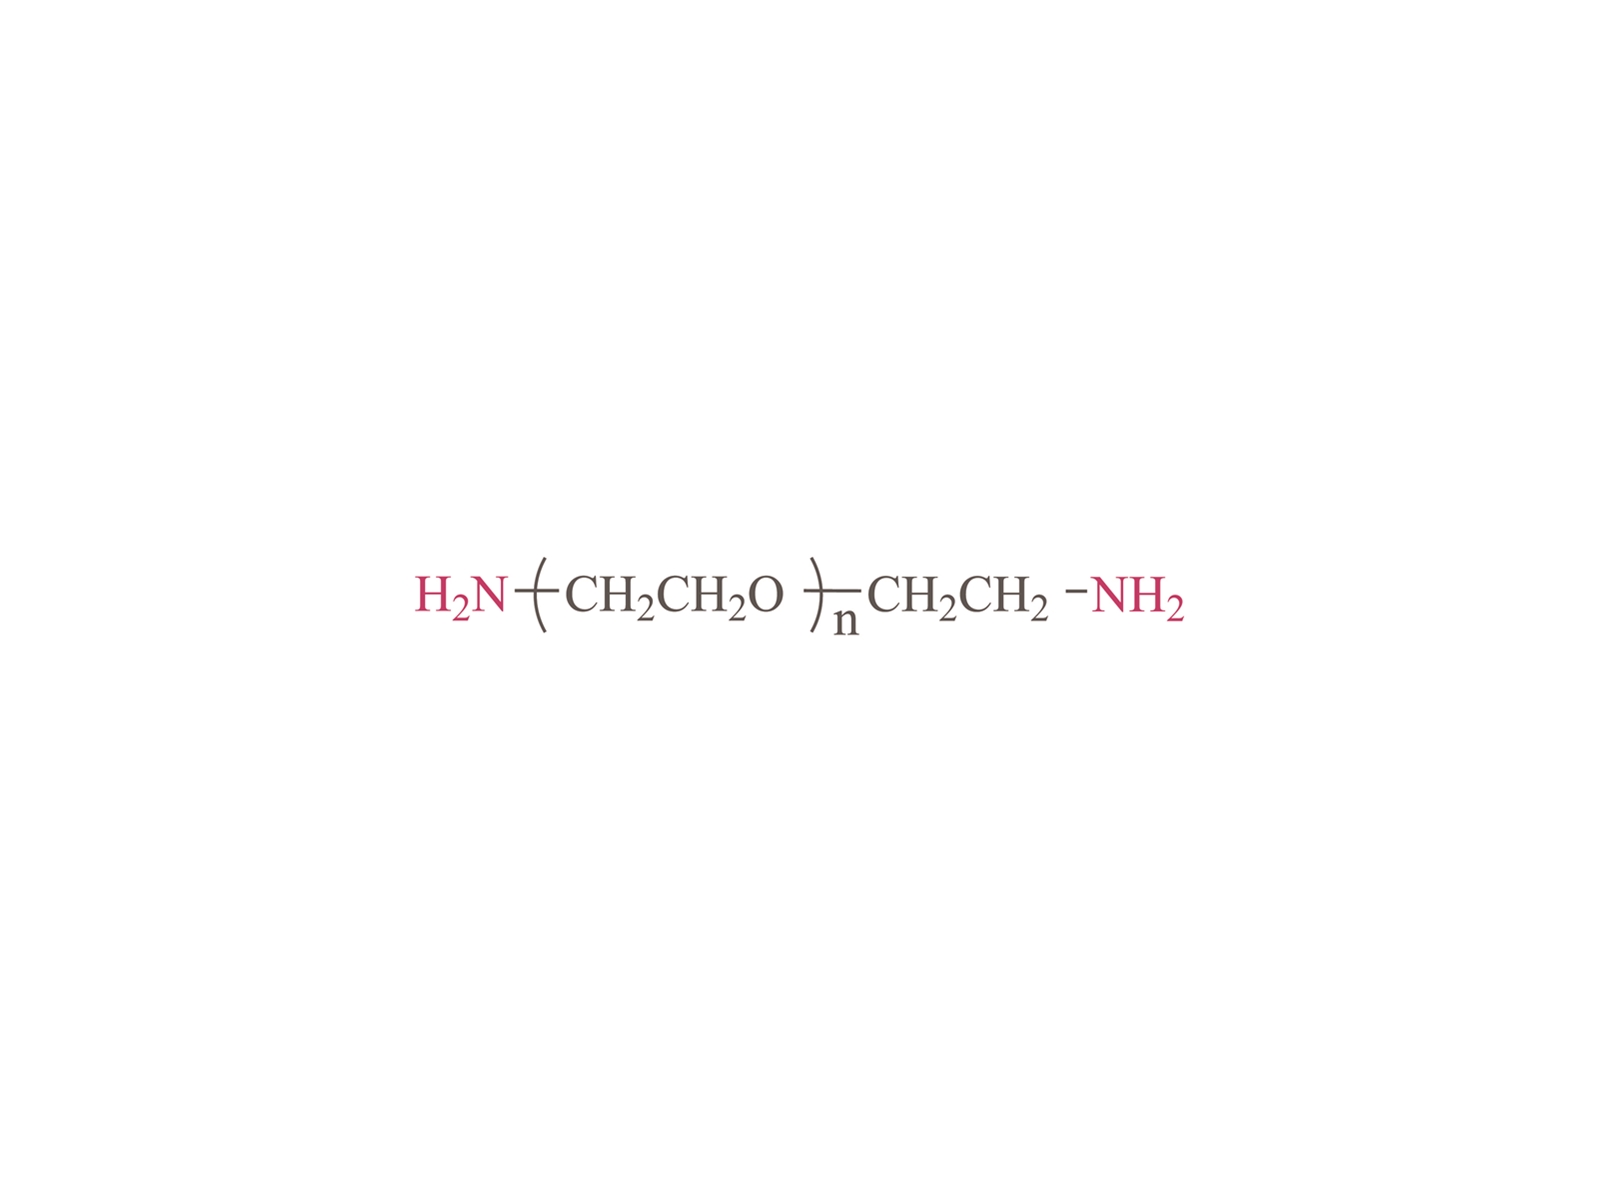 α, ω-Diamino โพลี (เอทิลีนไกลคอล) [H2N-PEG-NH2] CAS: 24991-53-5,929-59-9,929-75-9,68960-97-4,72236-26-1,76927-70-3, 332941-25-0, 82209-36-7